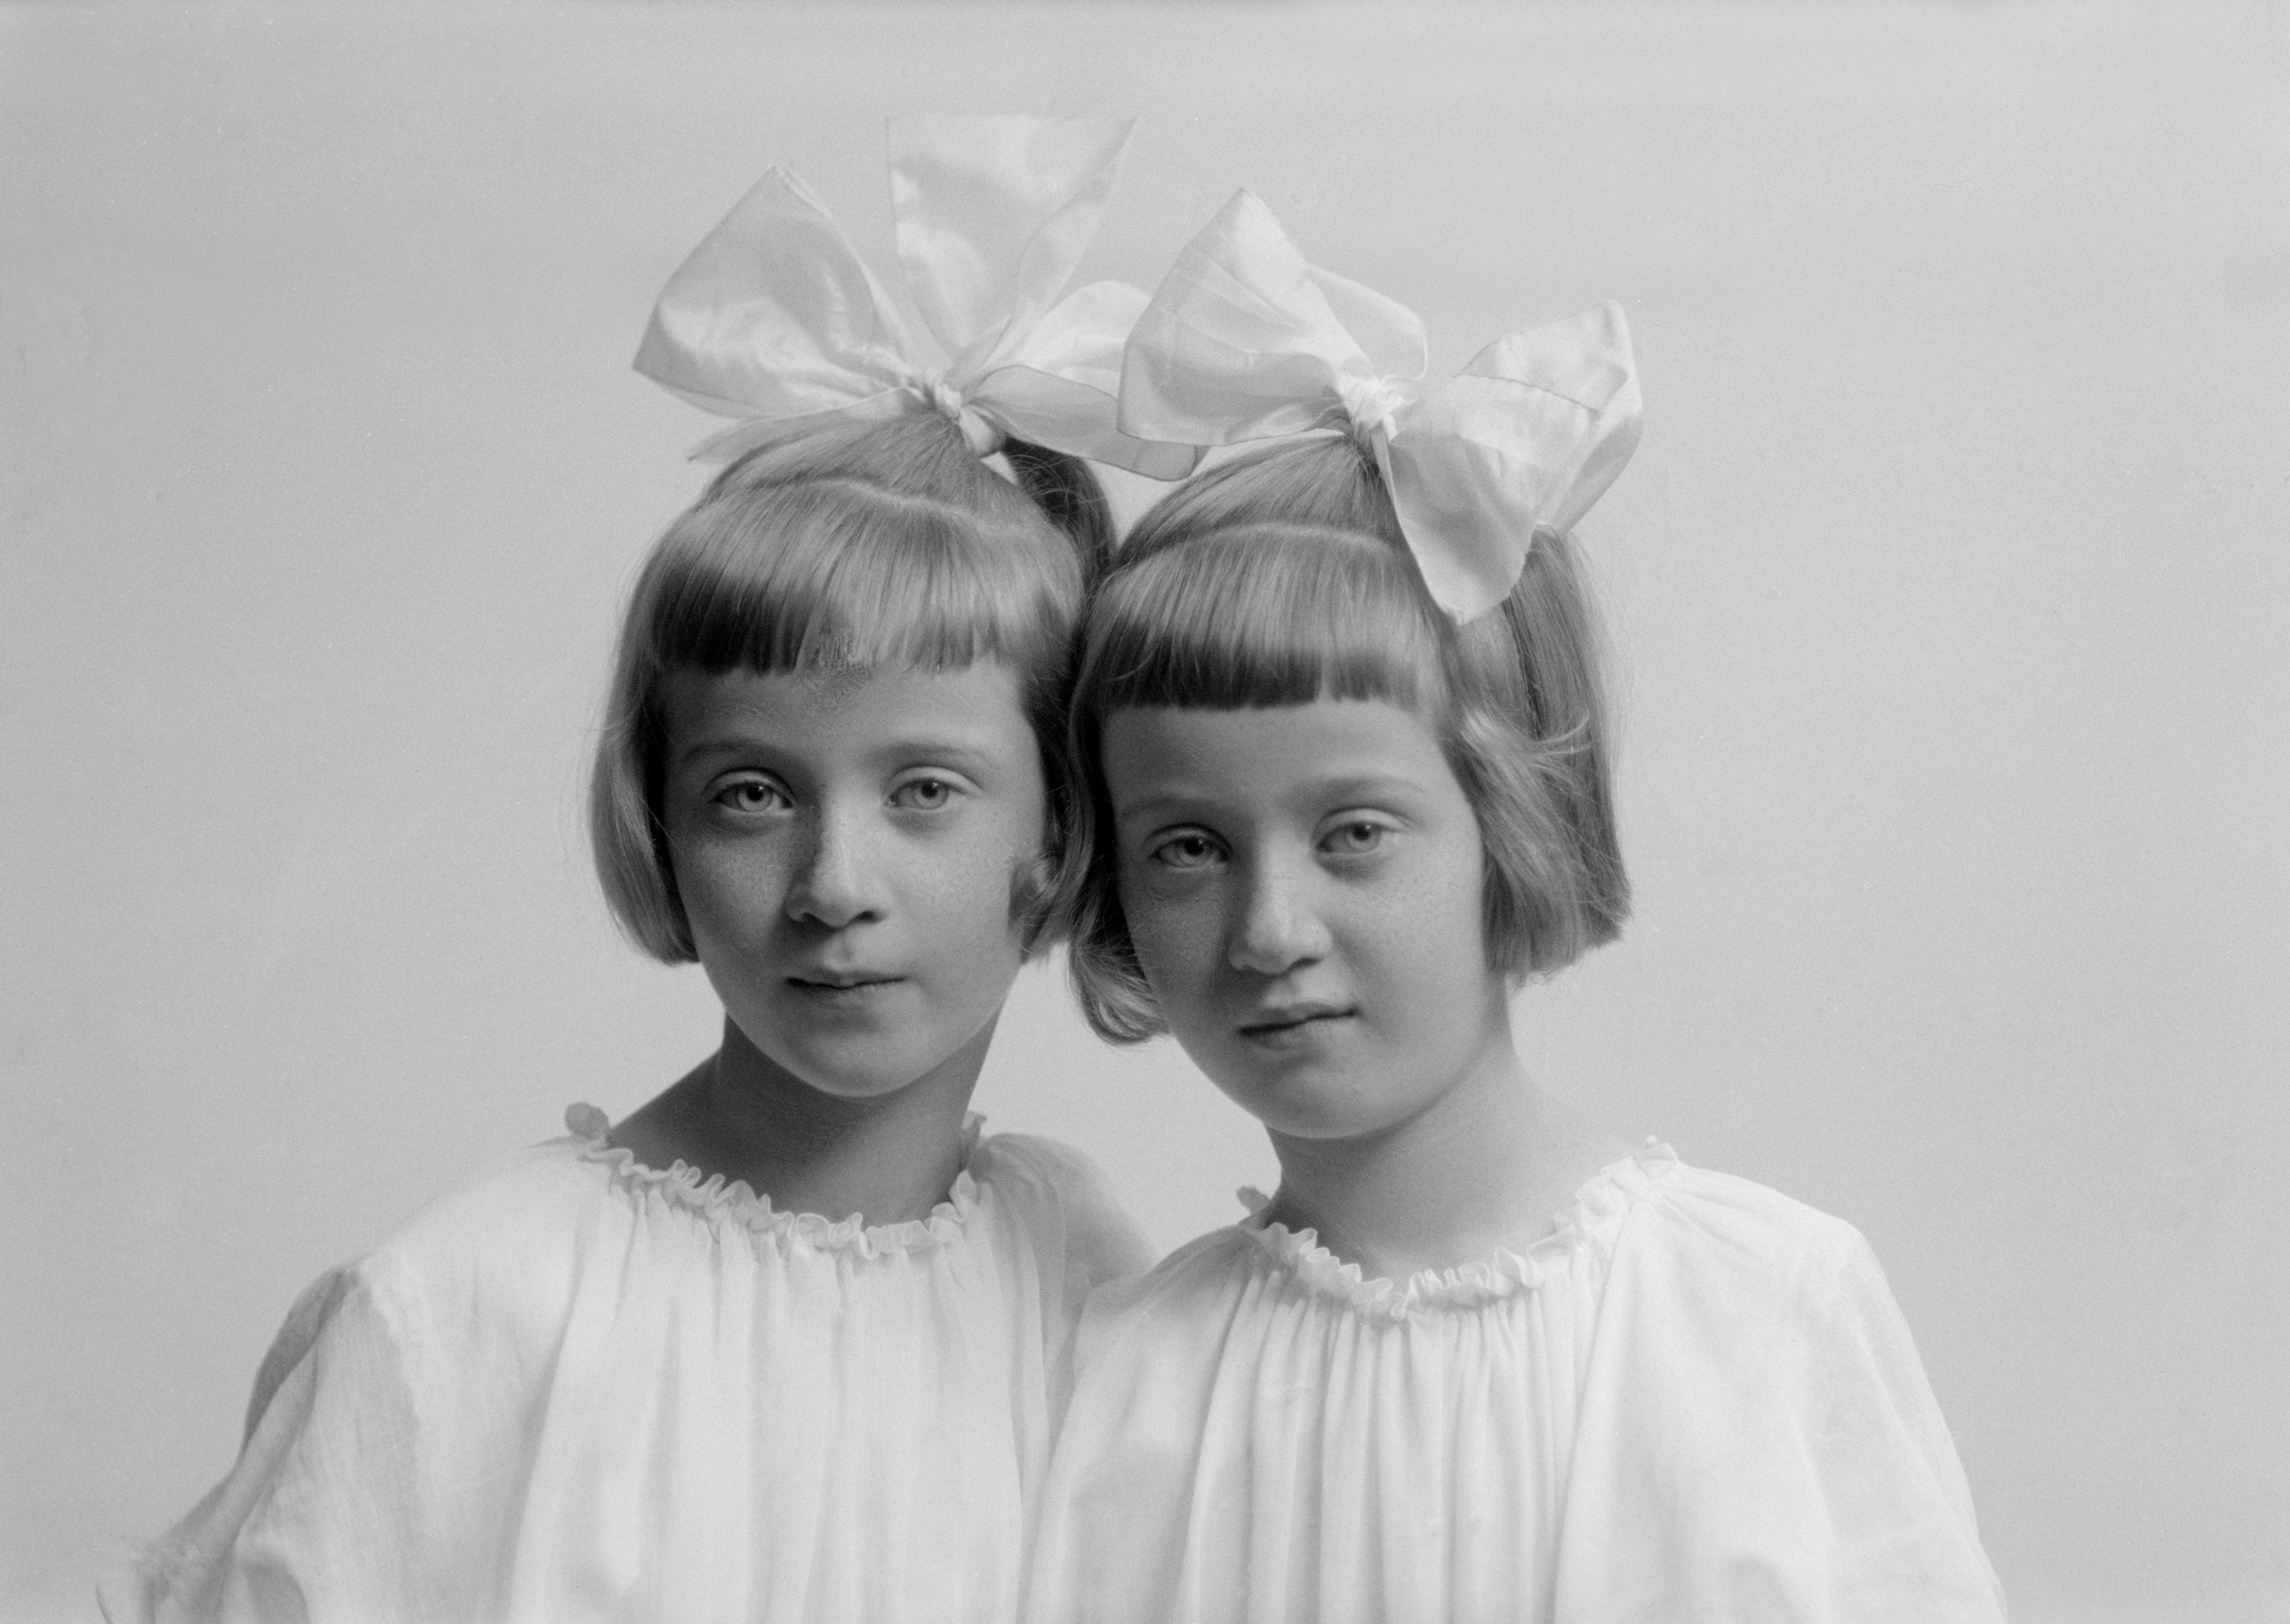 Två kavata flickor poserar i Maria Teschs ateljé i Linköping något år in på 1920-talet. Birgit och Inger är deras namn och de är tvillingdöttrar till bataljonsläkaren Gunnar Cars och dennes hustru Elsa. Från glasnegativ OM.TE.001577